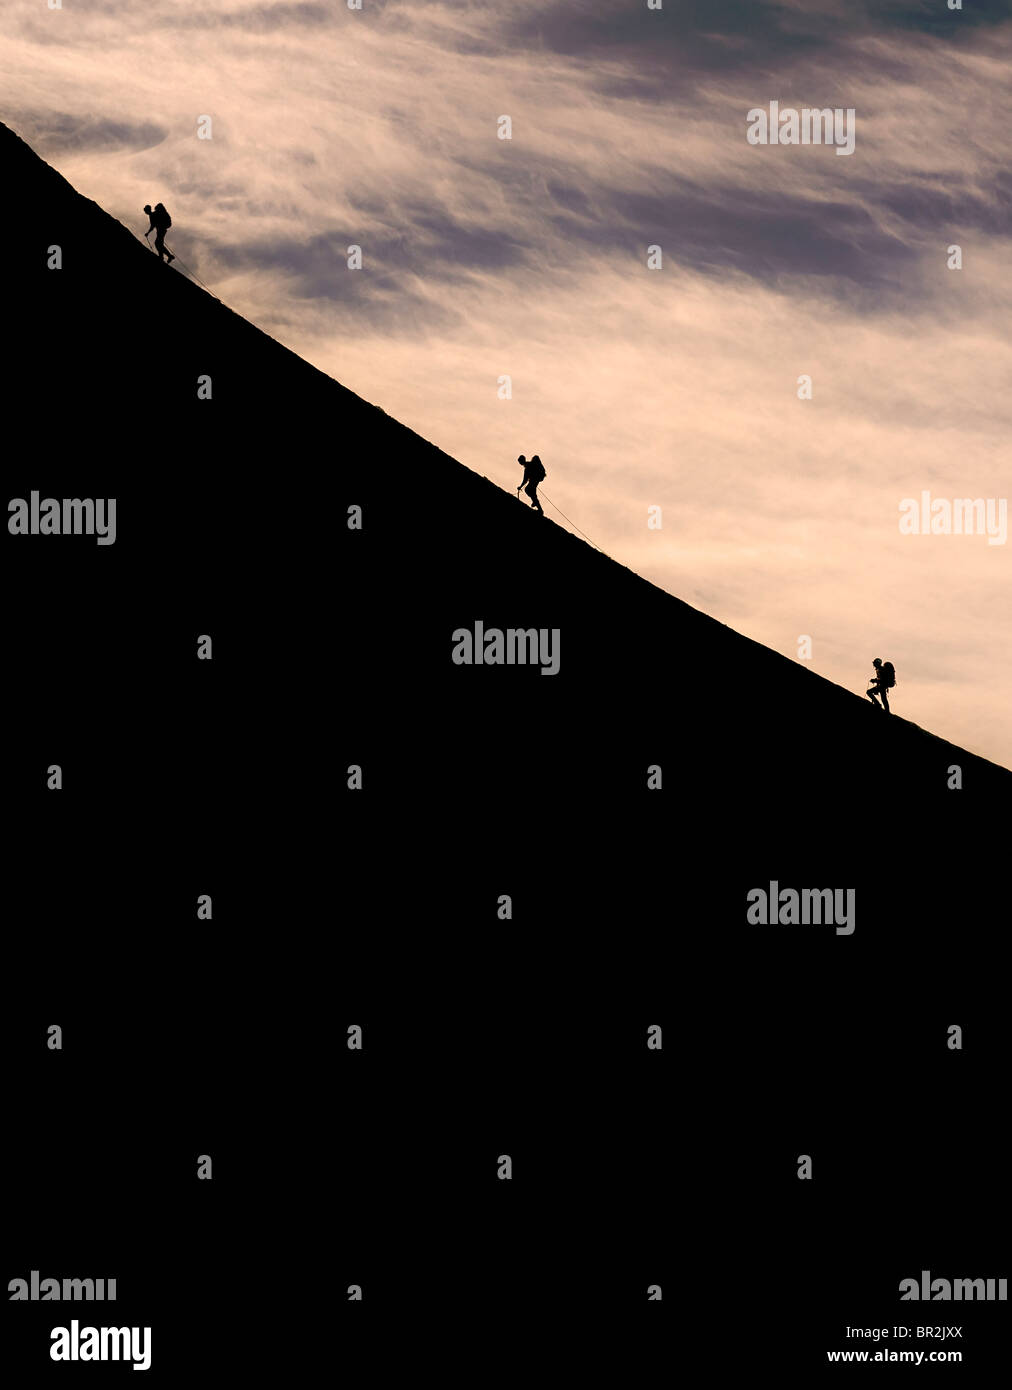 Silhouette d'alpinistes grimper une pente raide sur la crête de l'Alguile du Midi, Chamonix, France Banque D'Images